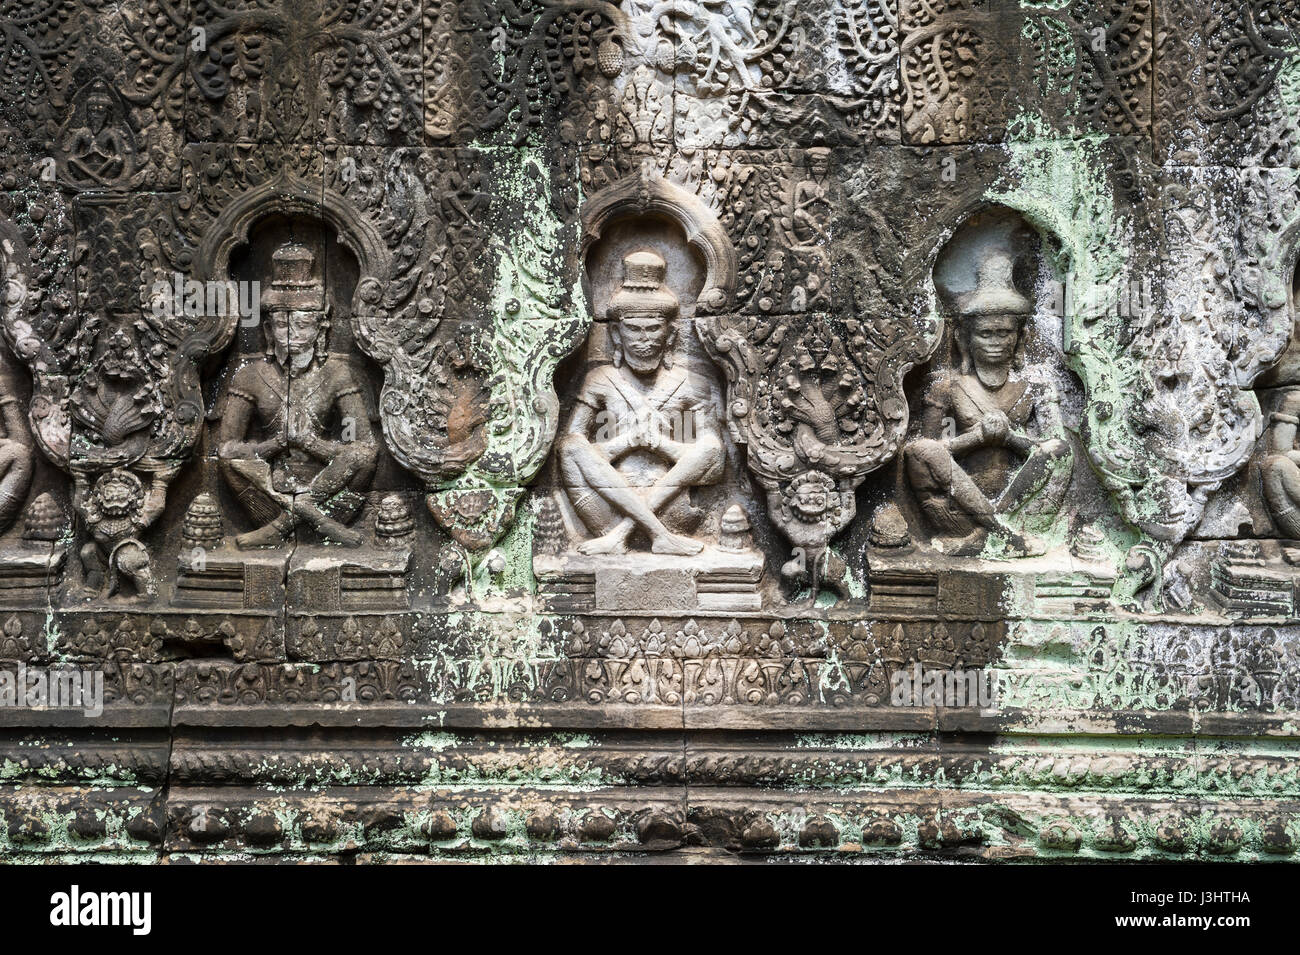 Fila de antiguos bailarines apsara tallados en piedra erosionados en las ruinas de los templos de Angkor Wat en Siem Reap, Camboya Foto de stock